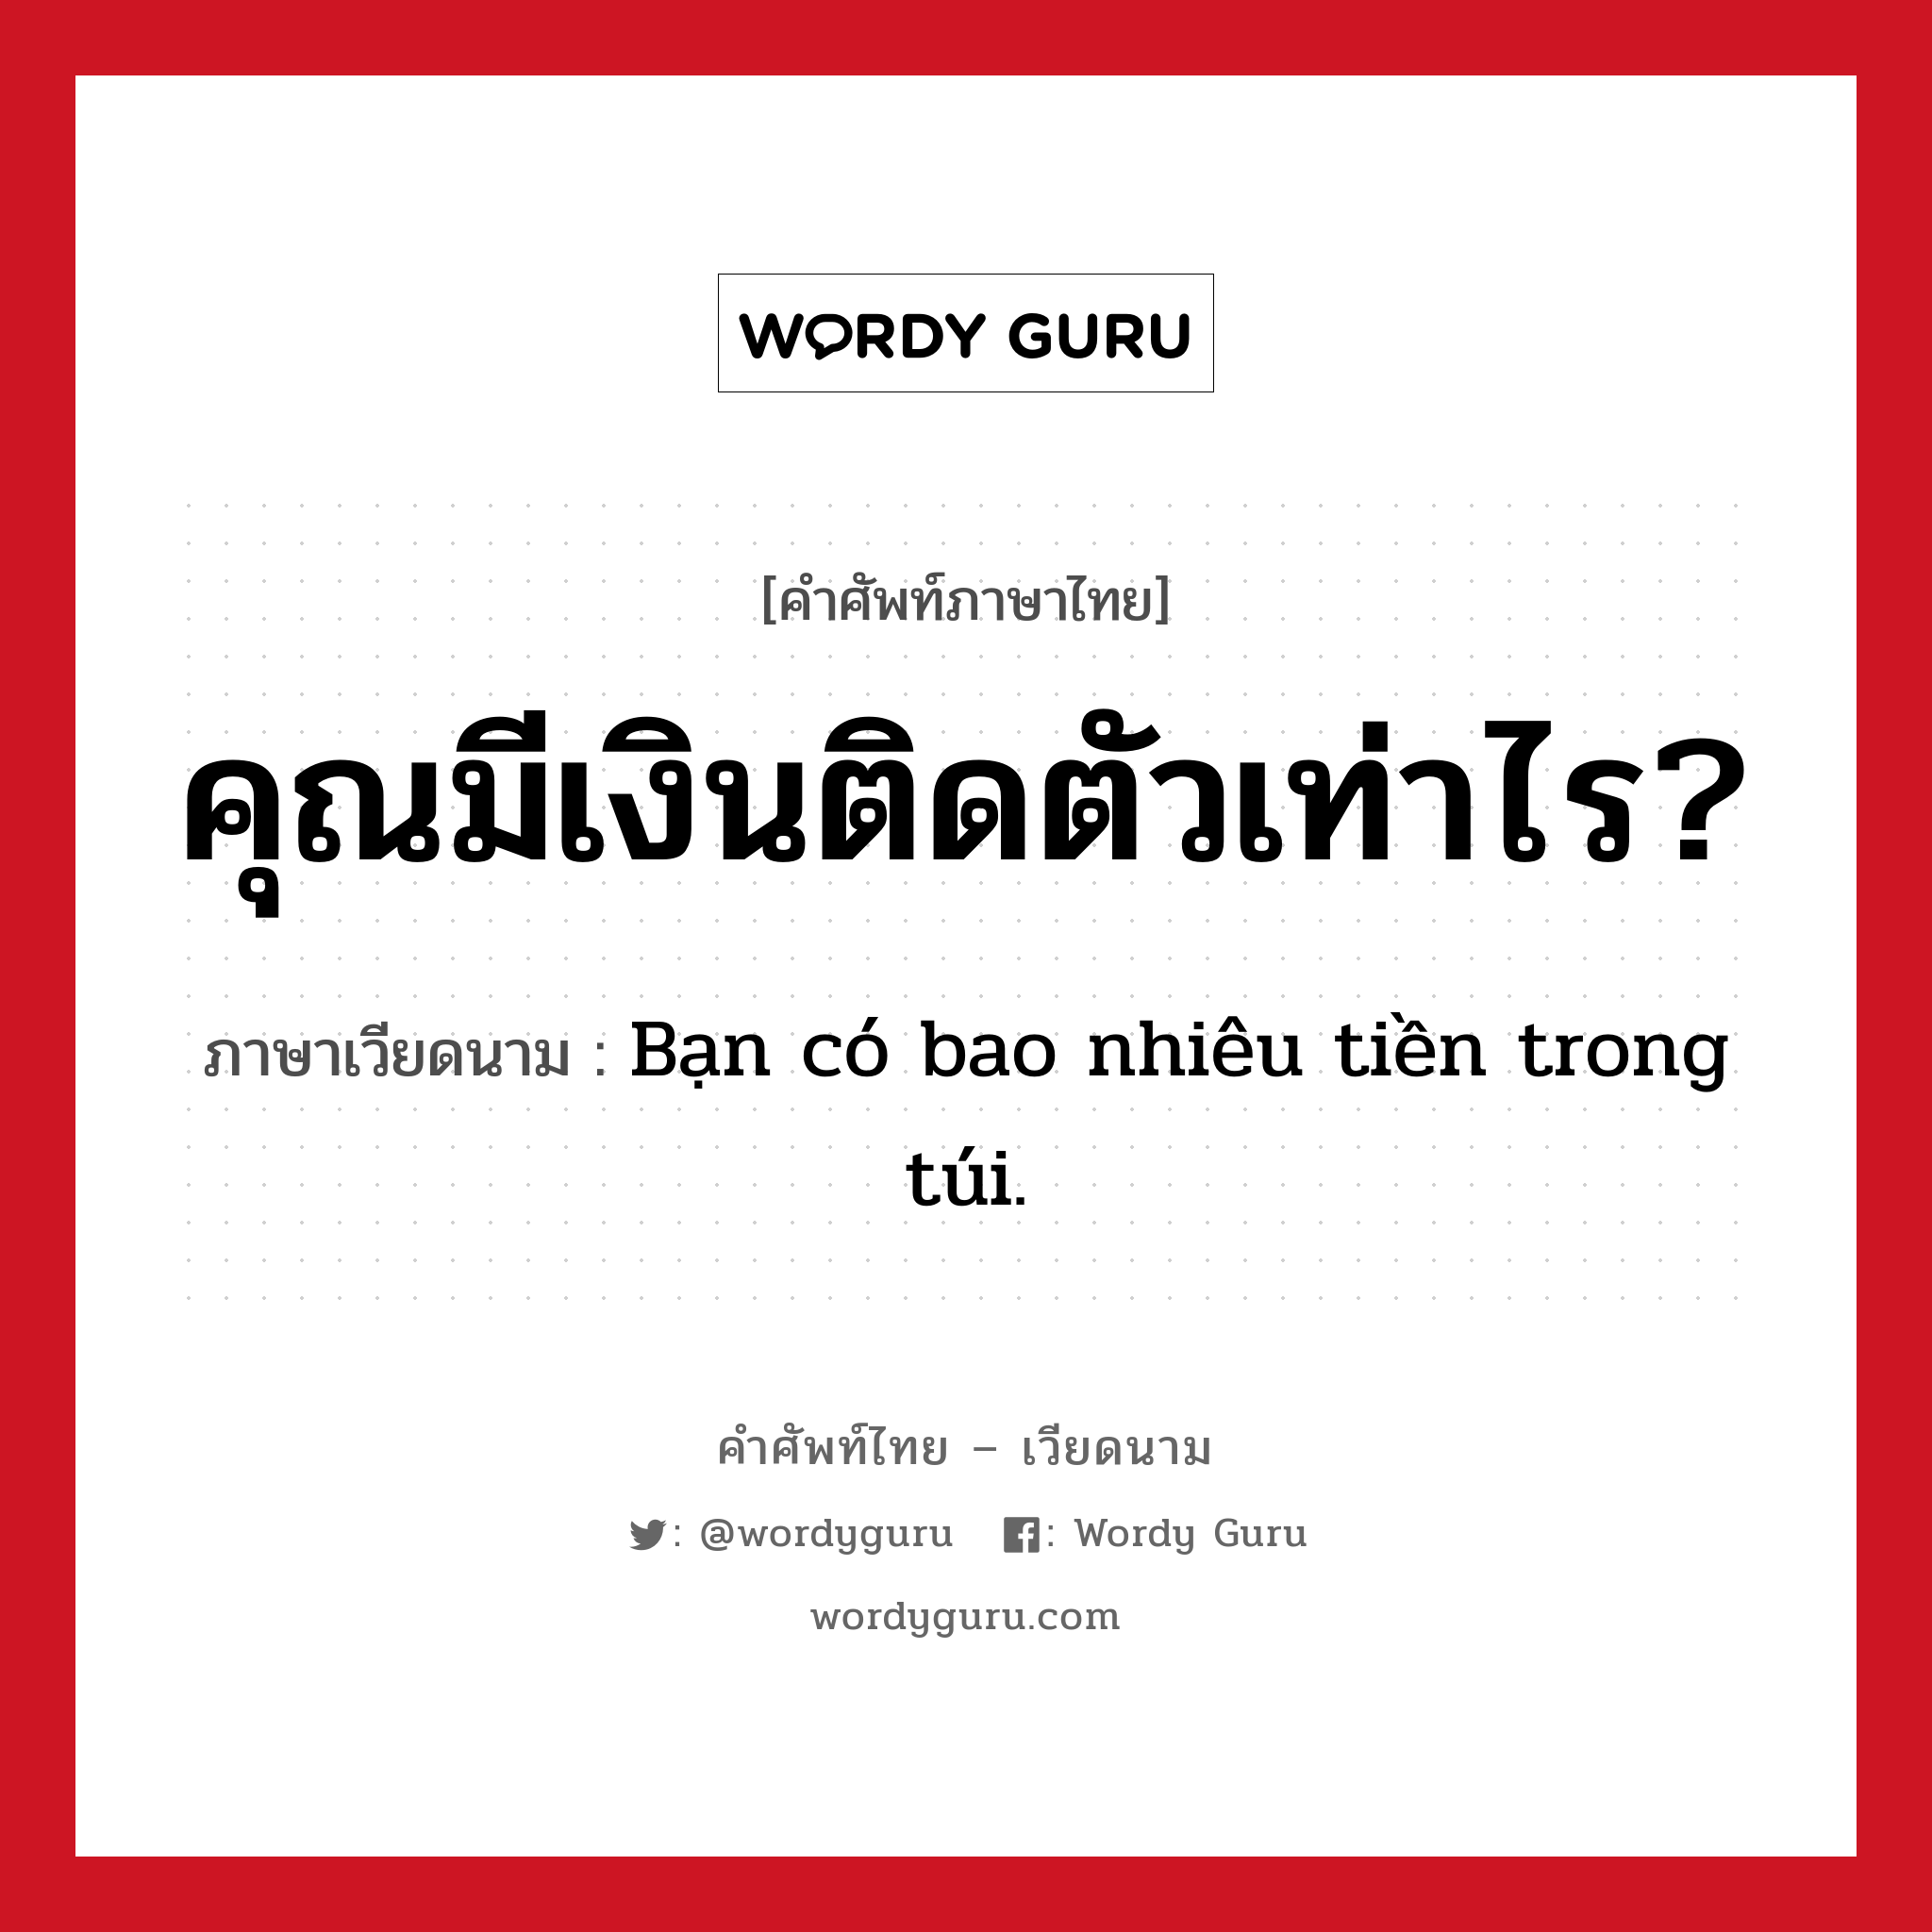 คุณมีเงินติดตัวเท่าไร? ภาษาเวียดนามคืออะไร, คำศัพท์ภาษาไทย - เวียดนาม คุณมีเงินติดตัวเท่าไร? ภาษาเวียดนาม Bạn có bao nhiêu tiền trong túi. หมวด การนับเลขและเวลา หมวด การนับเลขและเวลา